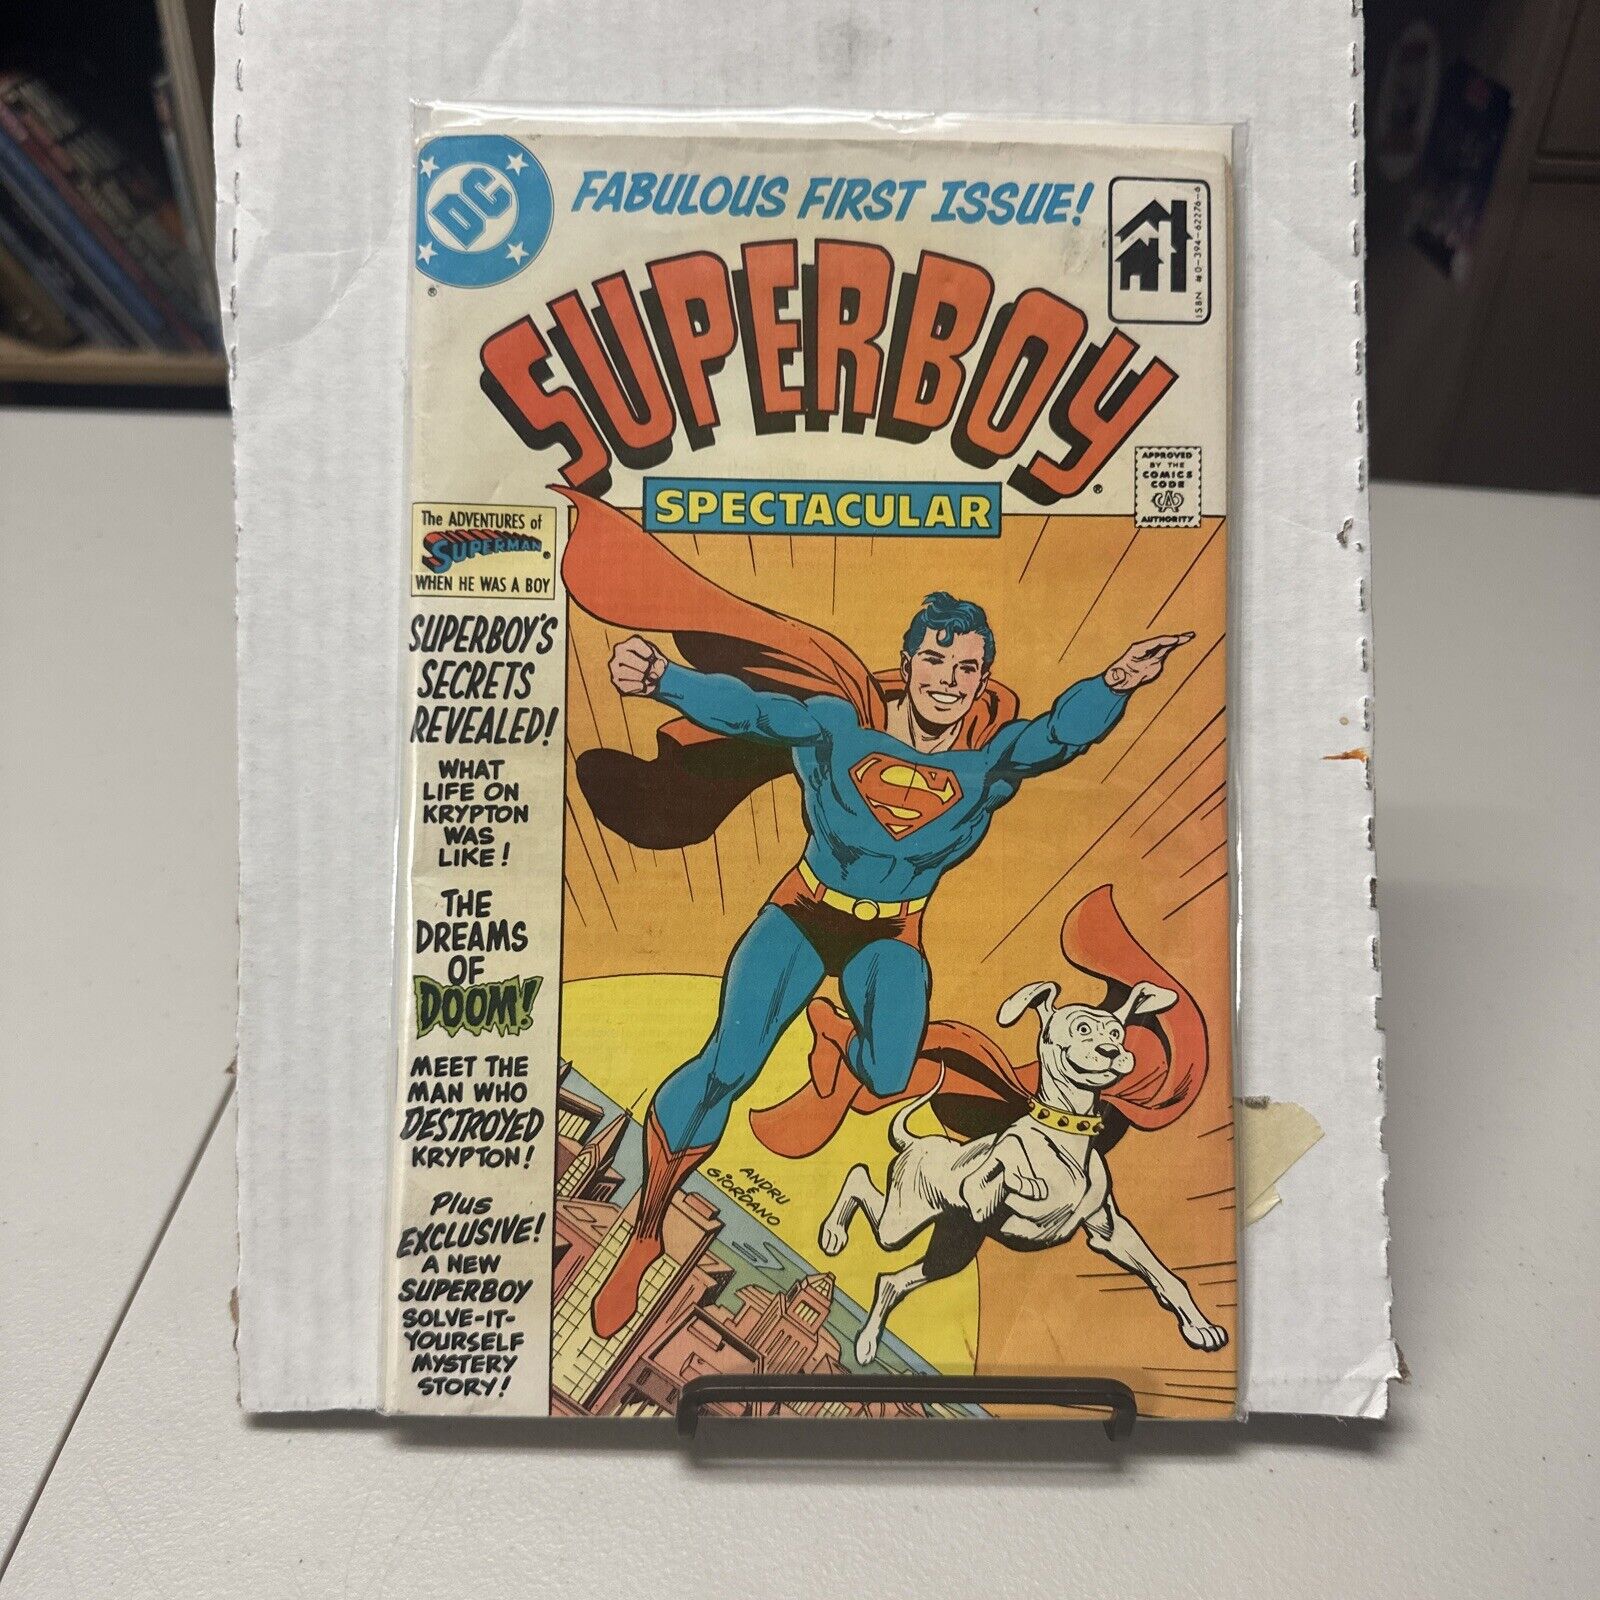 SUPERBOY SPECTACULAR 1 COLLECTORS ITEM DC COMICS 1980 SUPERHERO 